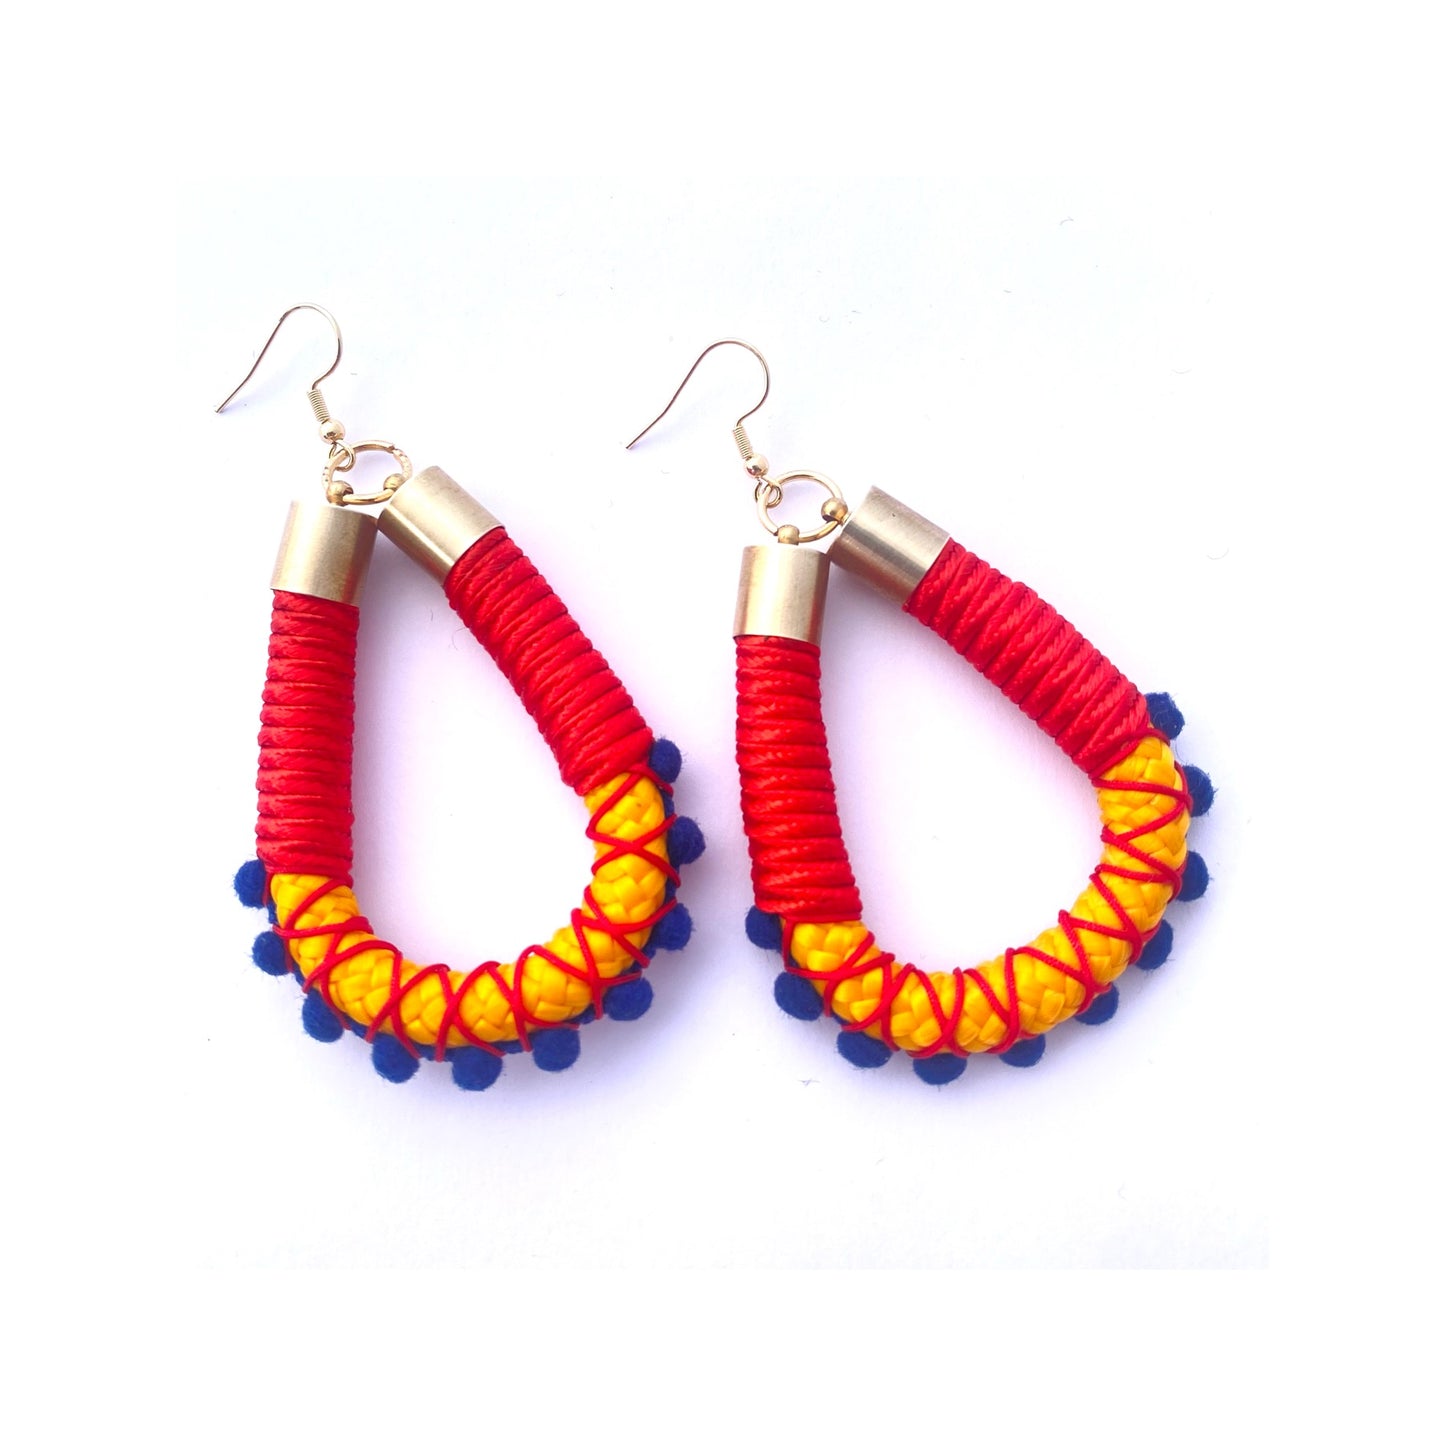 Frida earrings - red